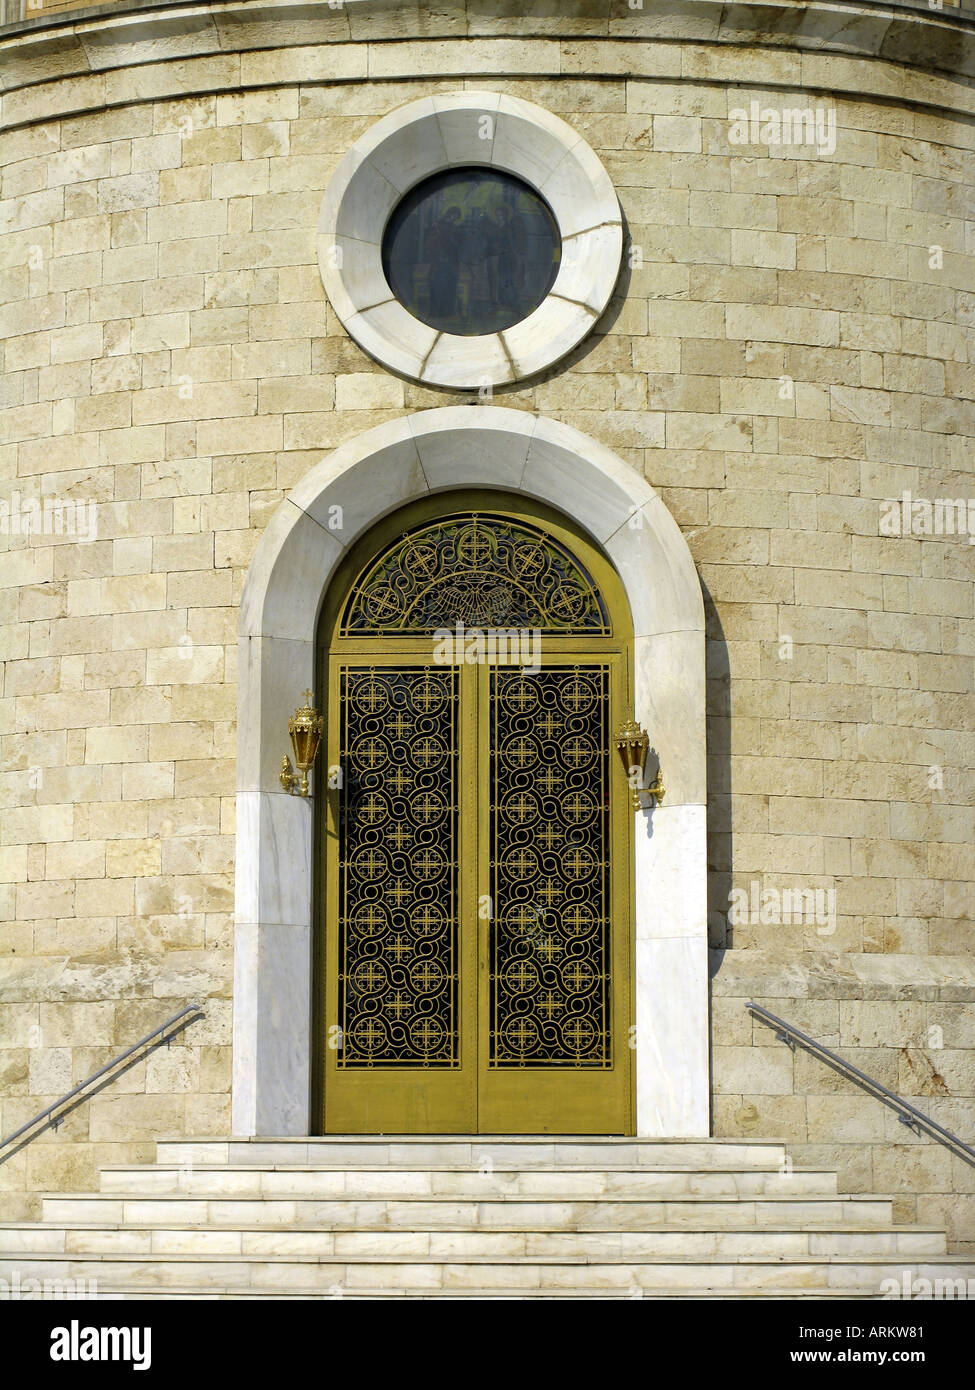 Die Kirche des Heiligen Konstantin und Eleni, Glyfada, Athen, Griechenland, Europee. Stockfoto